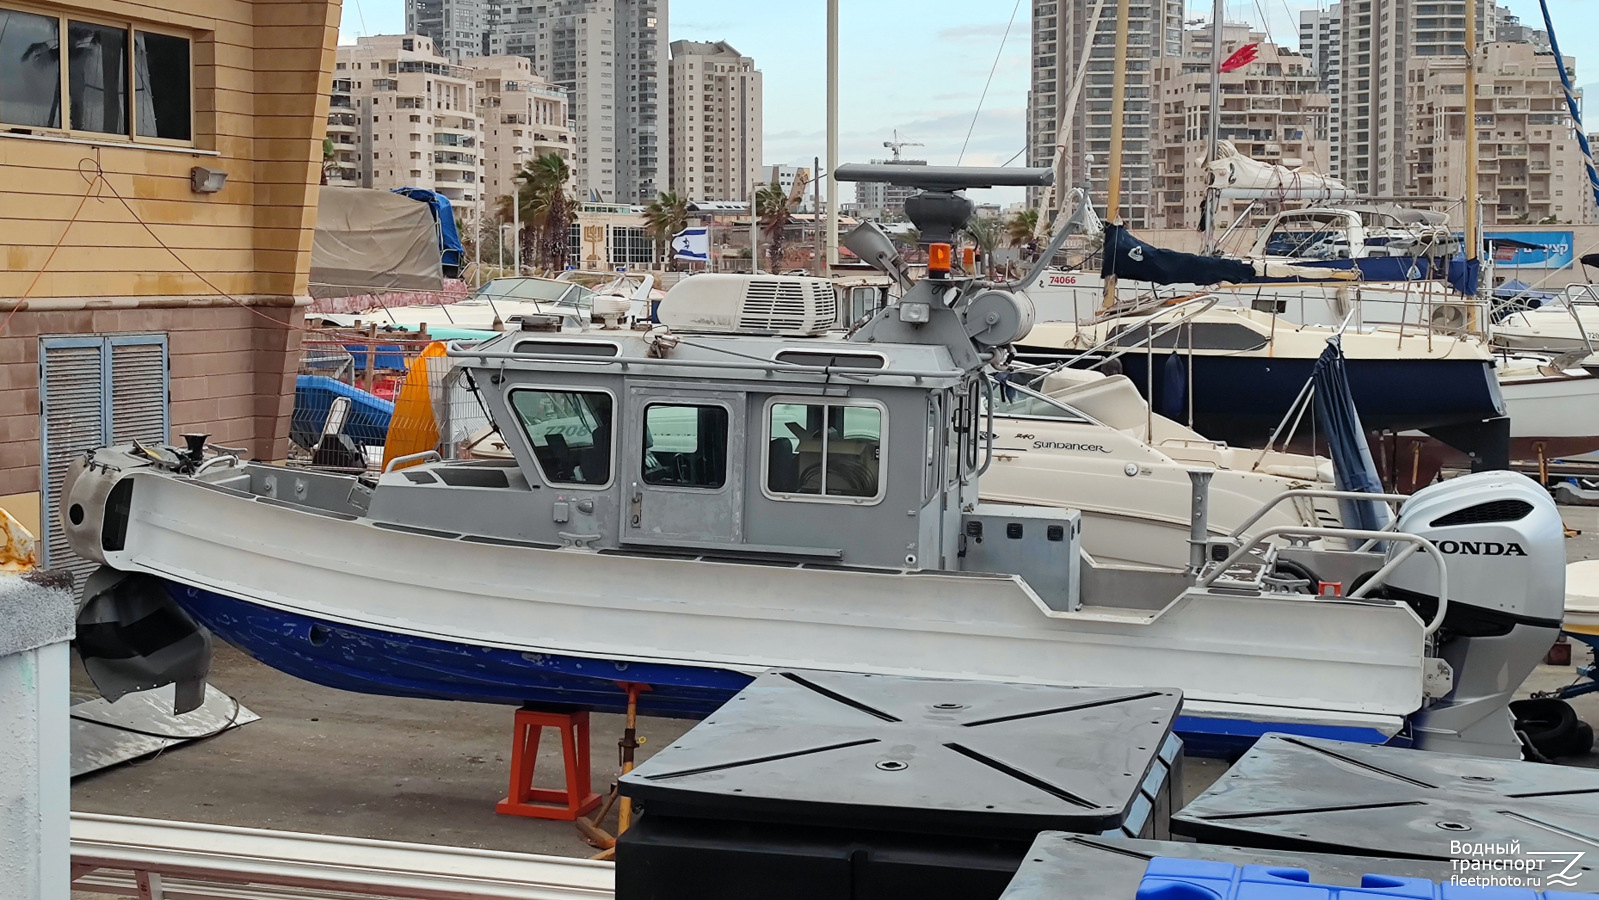 Неопознанное судно - тип SAFE Boats. Израиль